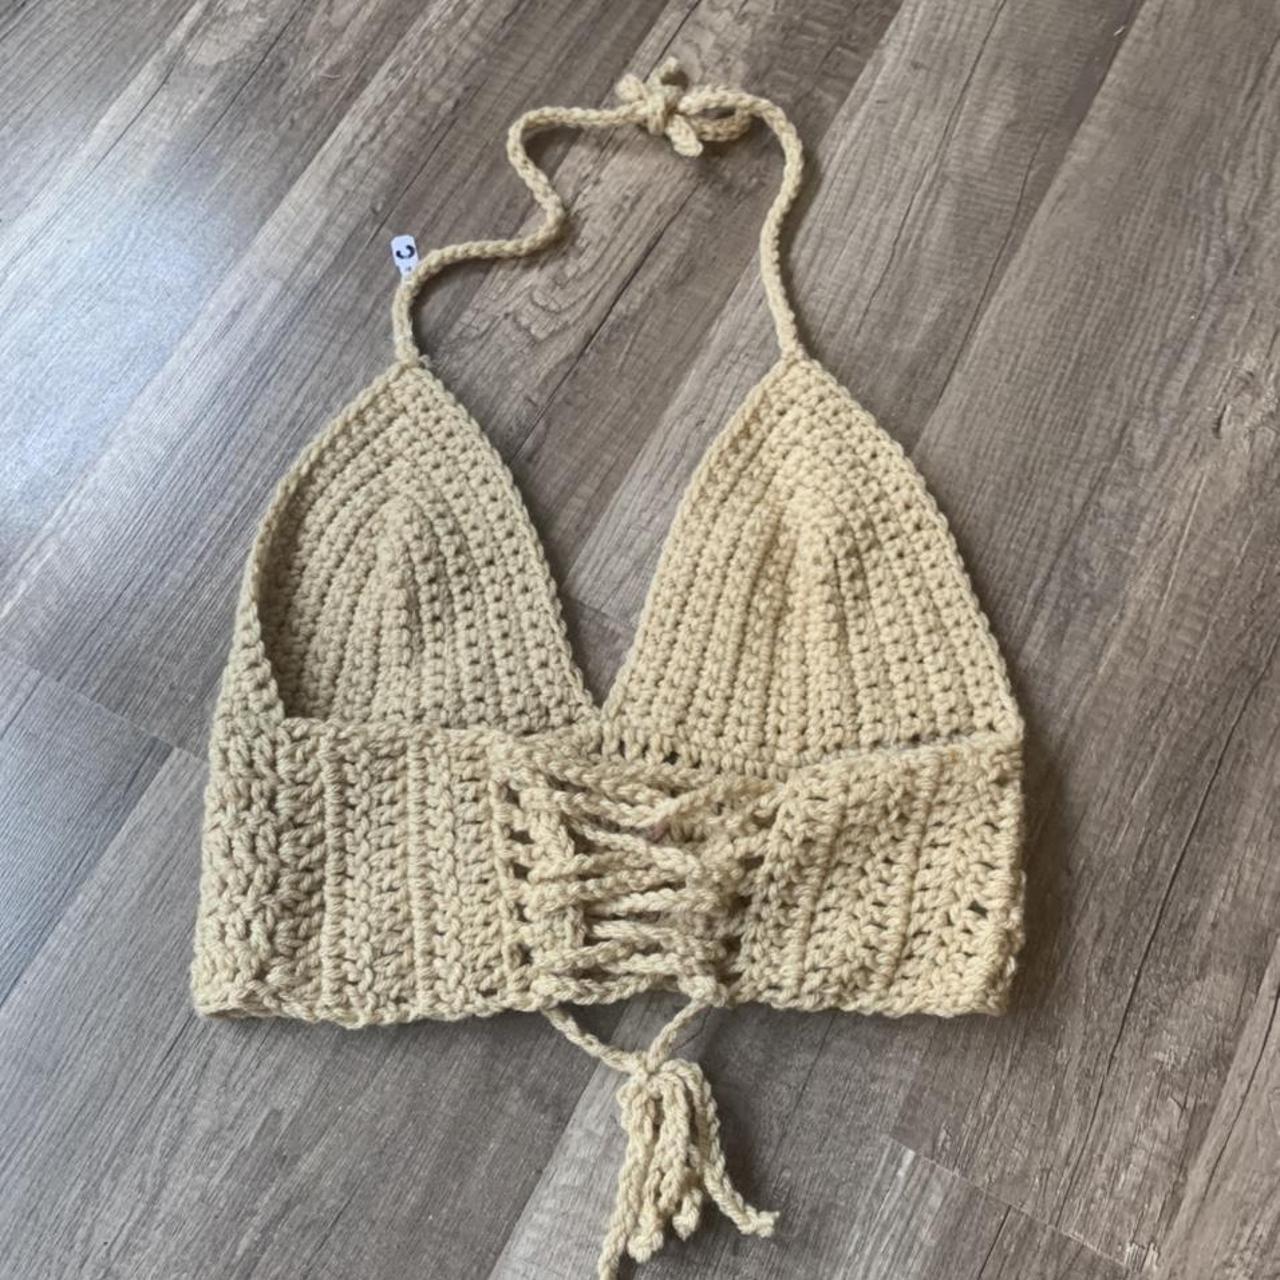 Fabienne Crochet Bralette